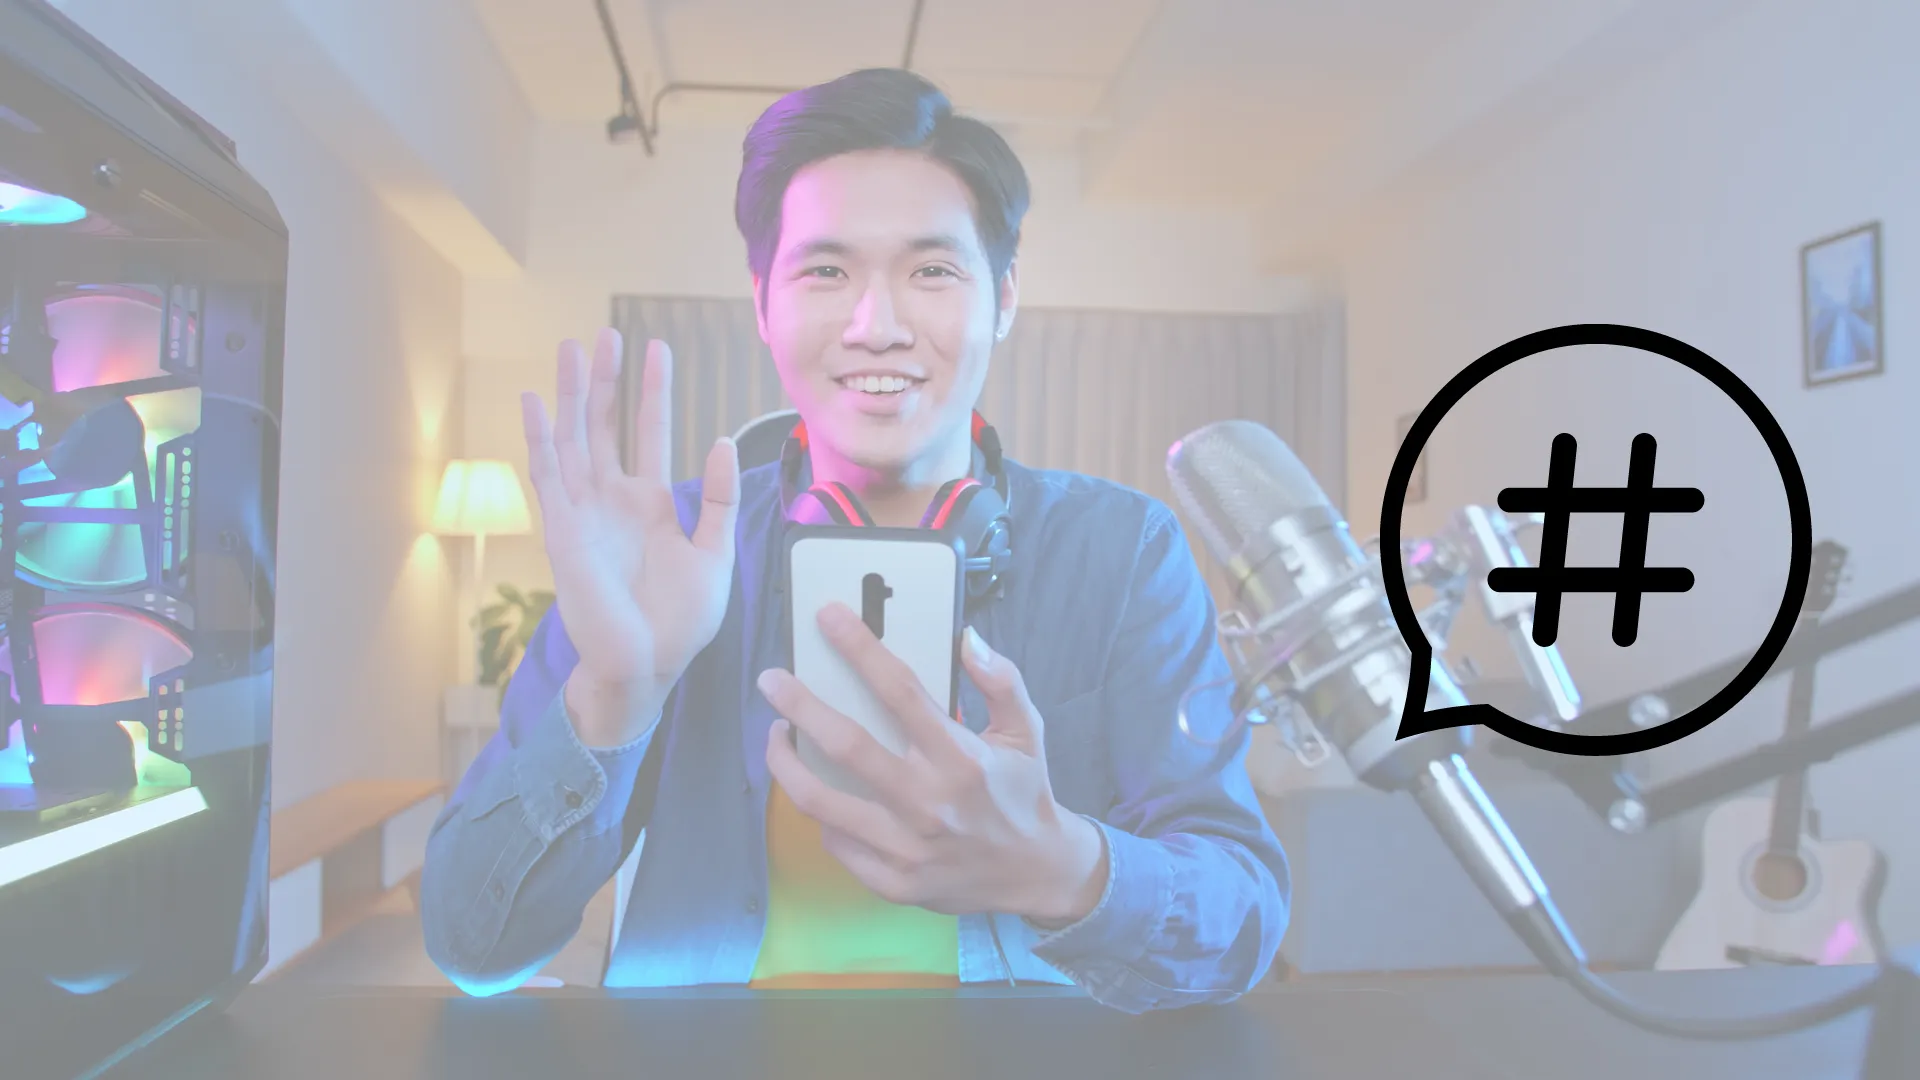 Joven asiatico grabando un 'live' con un smartphone en un cuarto gamer